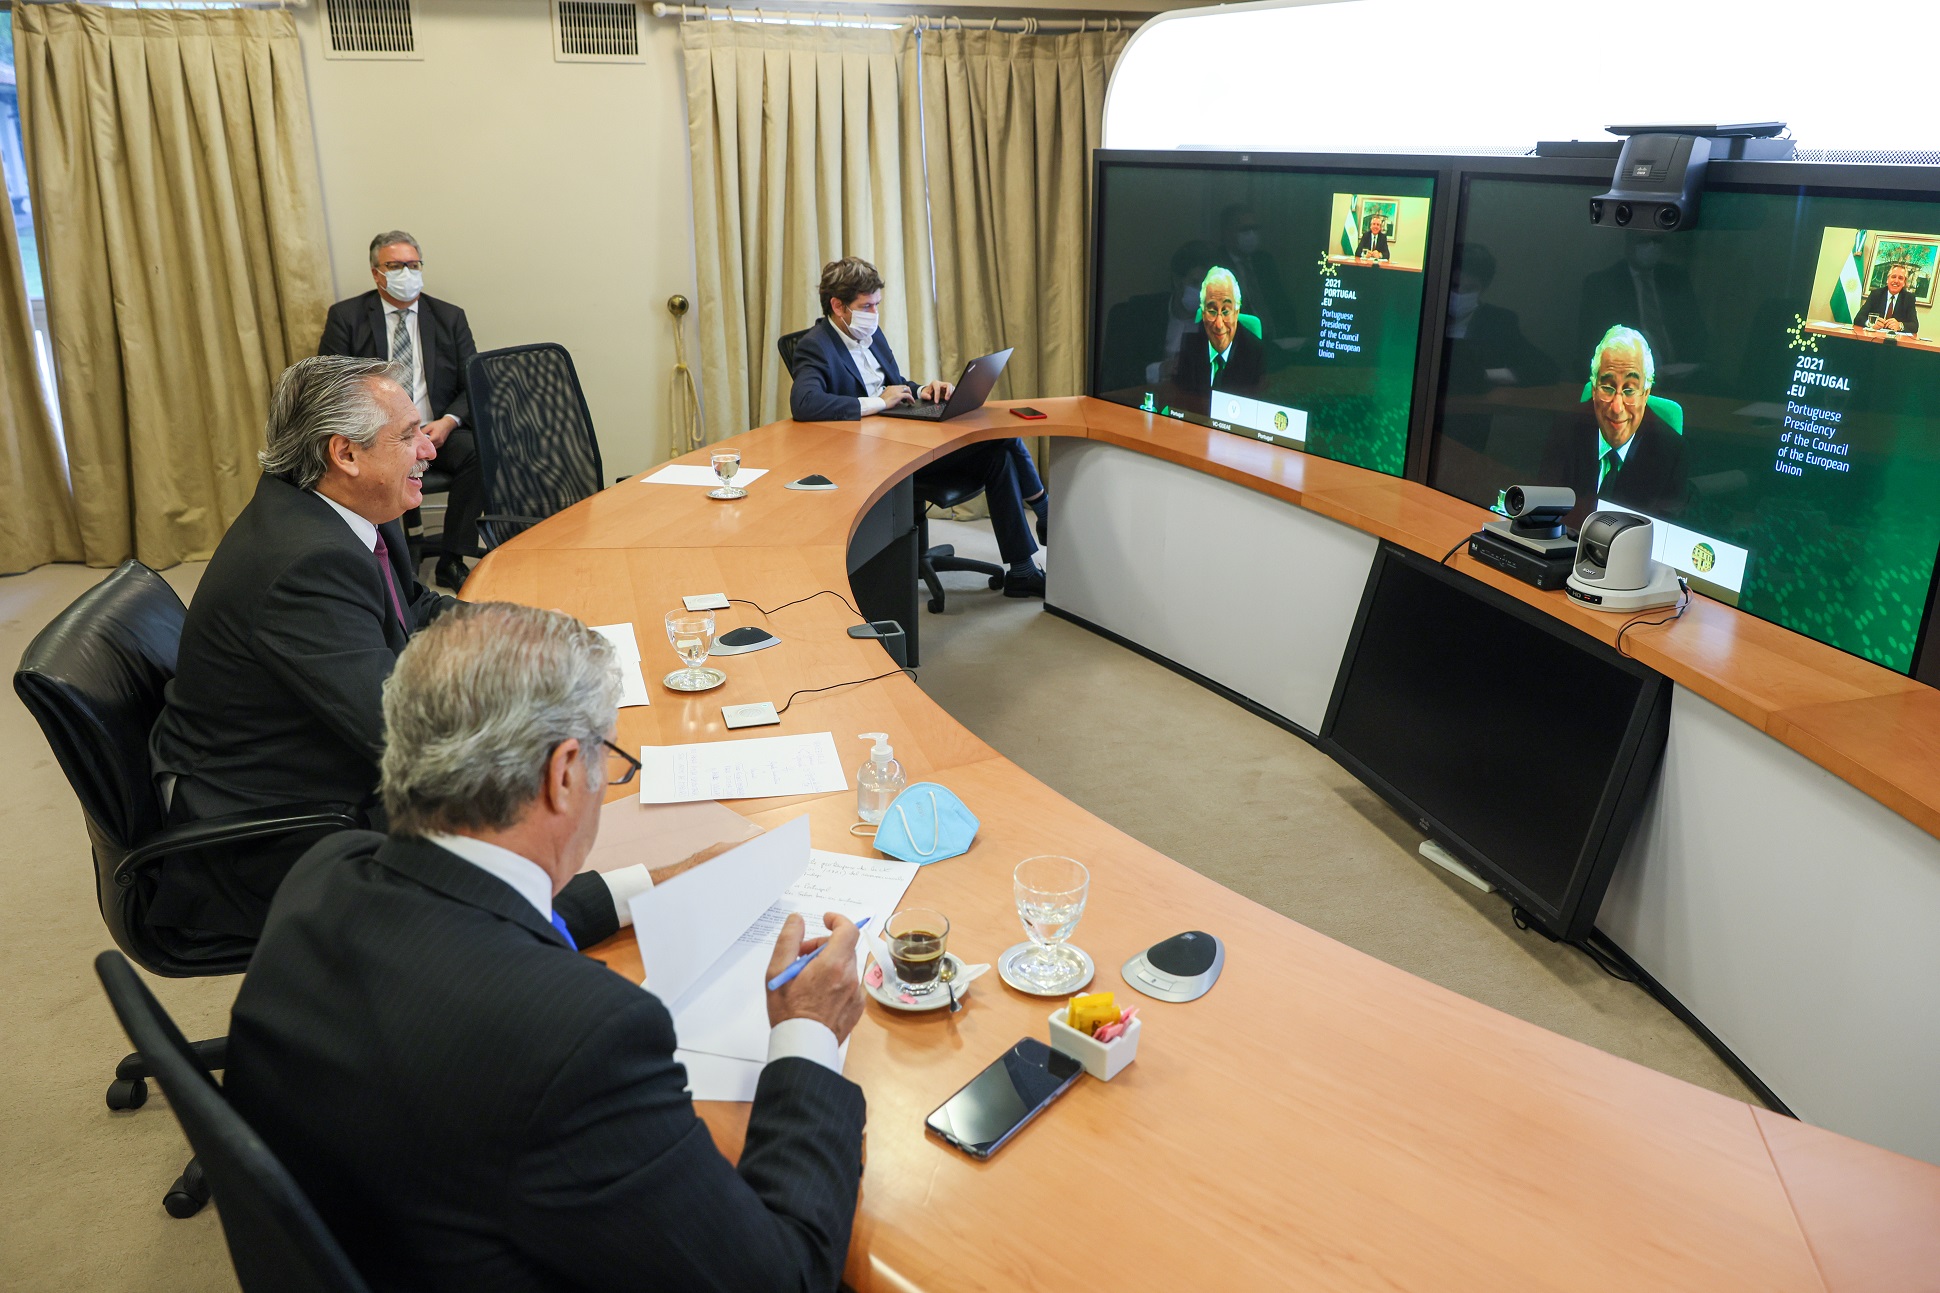 El Presidente mantuvo una videoconferencia con el primer ministro de Portugal, Antonio Costa